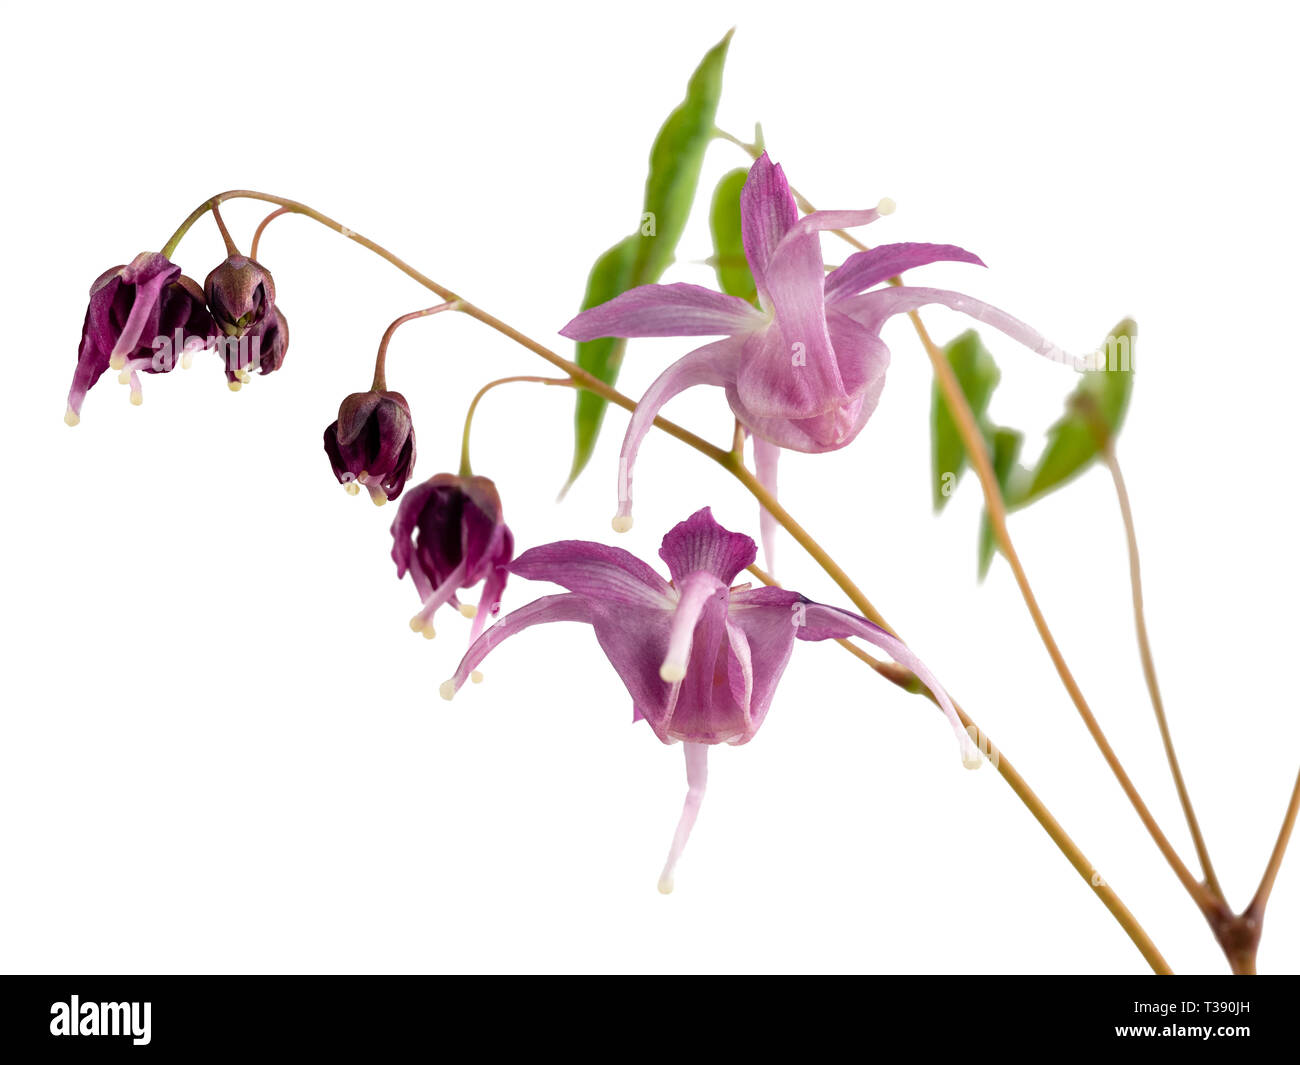 Violeta, lila y flores de la planta perenne robusta Epimedium Buckland "Spider", un cruce entre E.koreanum y E.grandiflorum Foto de stock